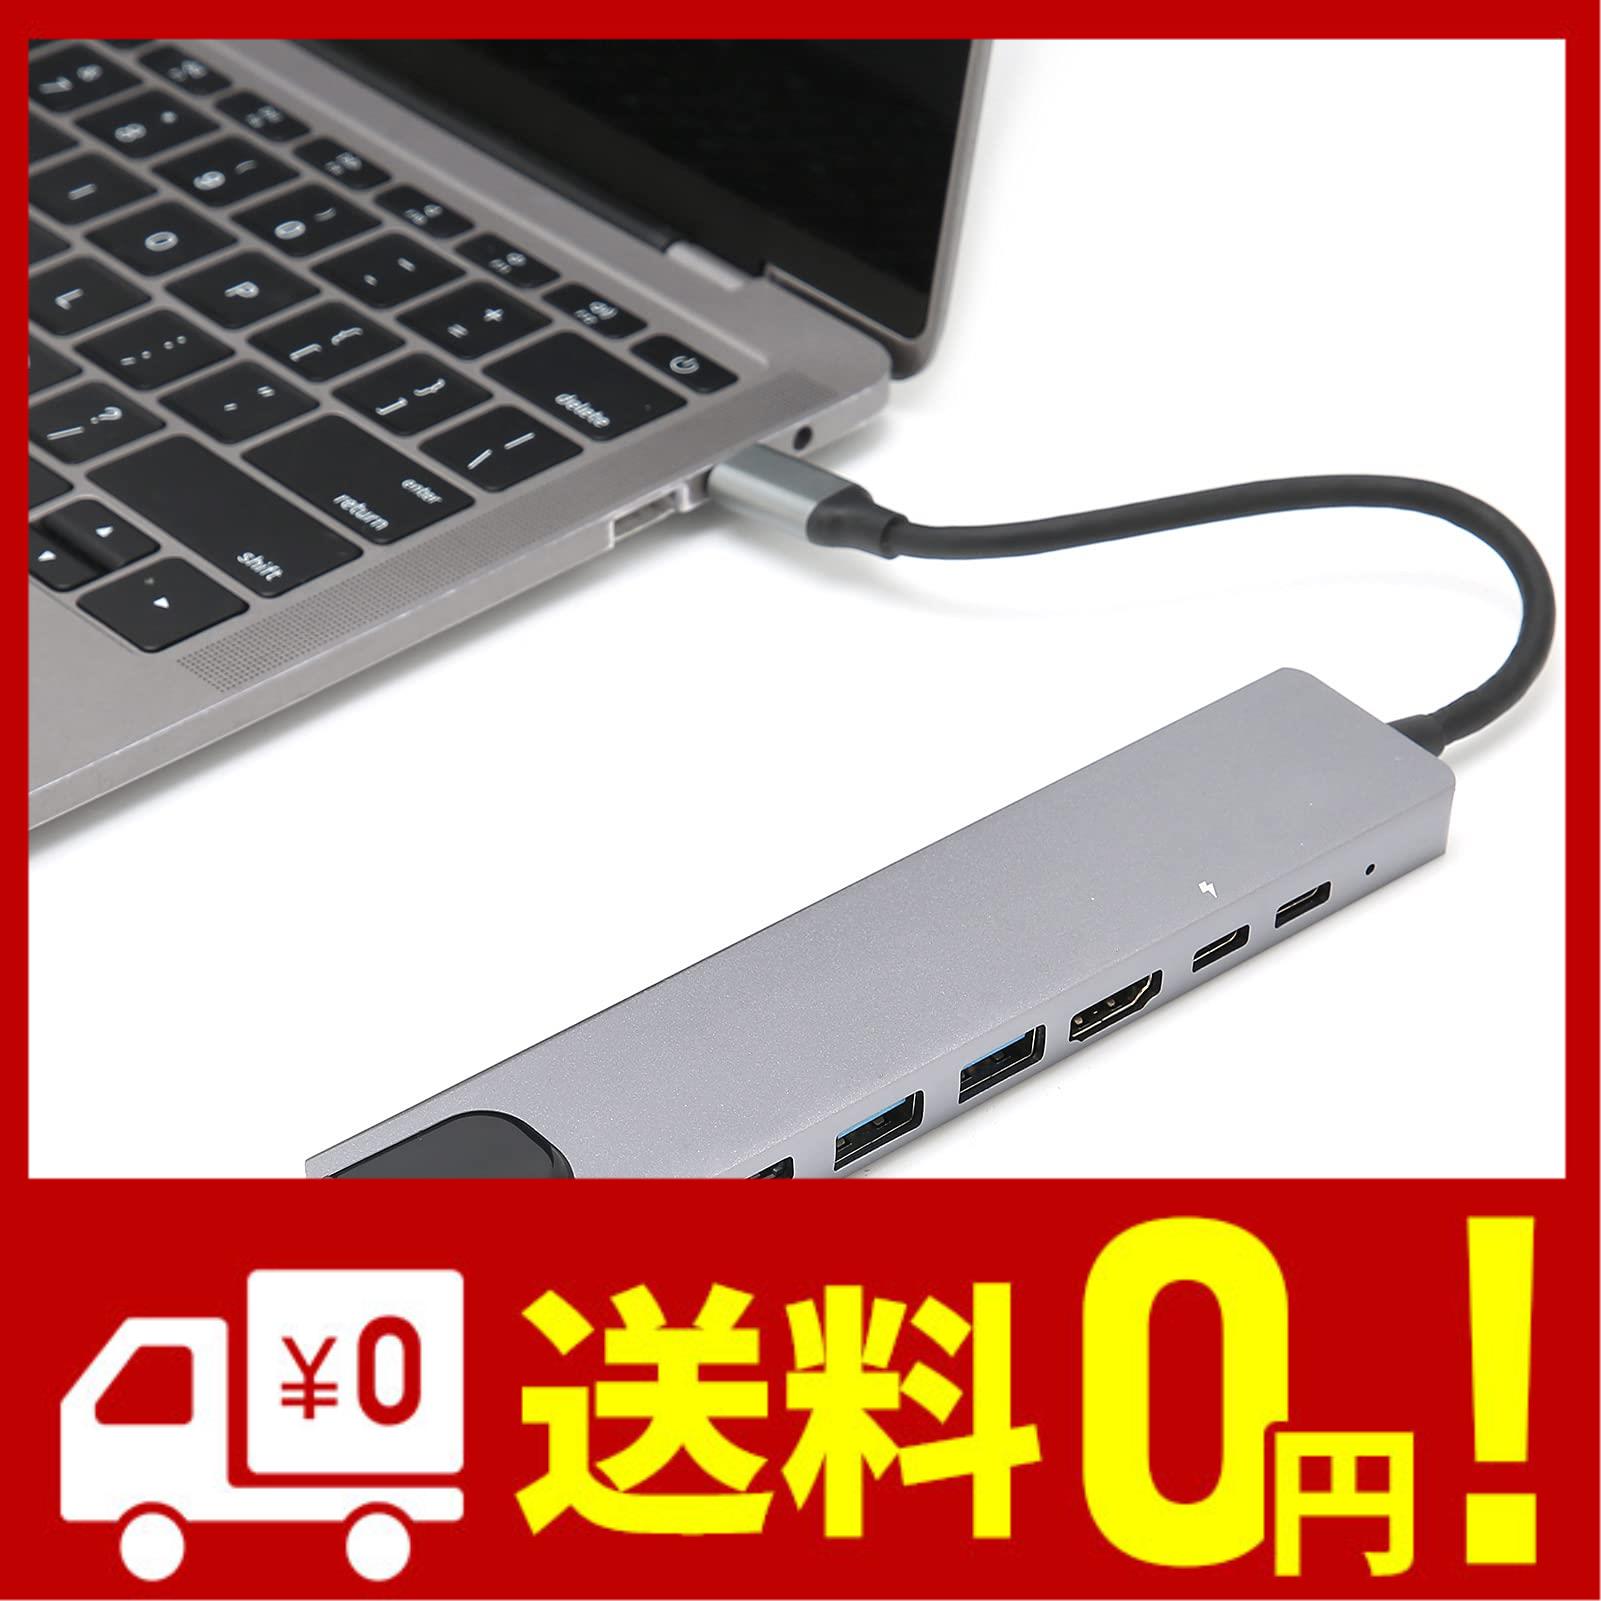 8 In 1 USBハブ USB Type C 4K HDMI 2 USB 3.0ポート 2 Type-C RJ45 PD充電ポート SD TFカードリーダー PC用マルチポートアダプタードッ